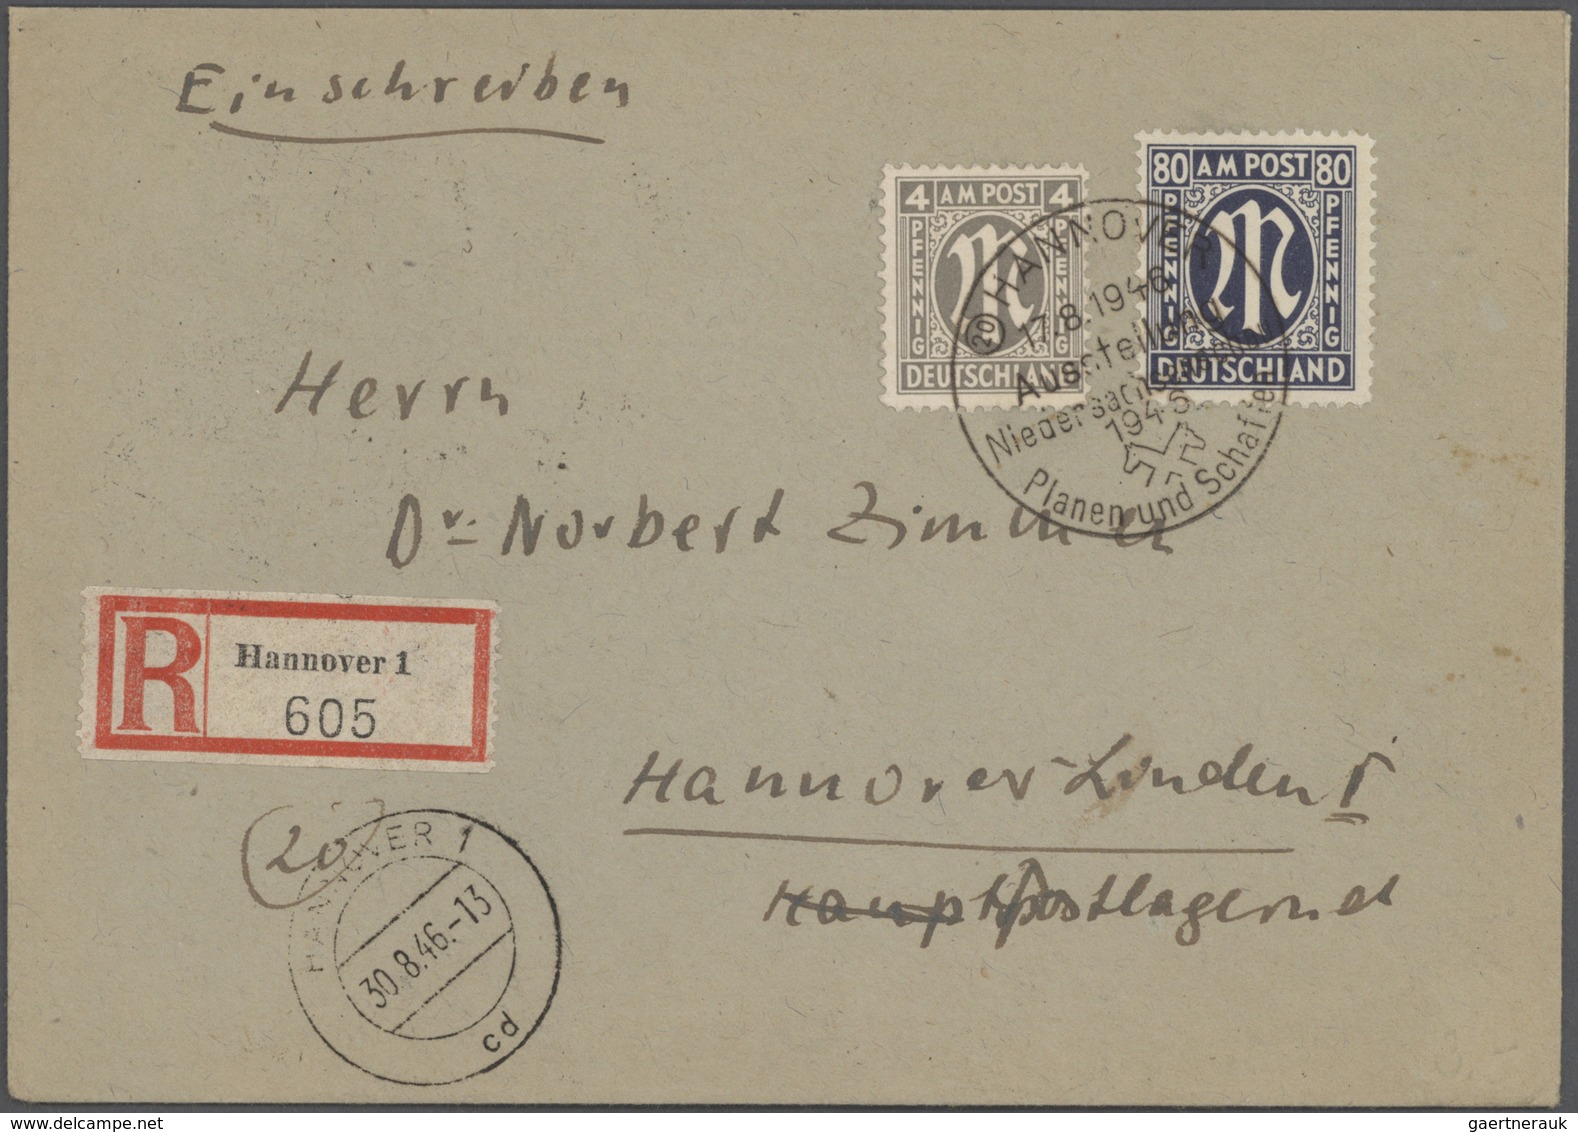 32112 Deutschland nach 1945: 1945/1949, Sammlung von ca. 220 Briefen und Karten mit Frankaturen Kontrollra